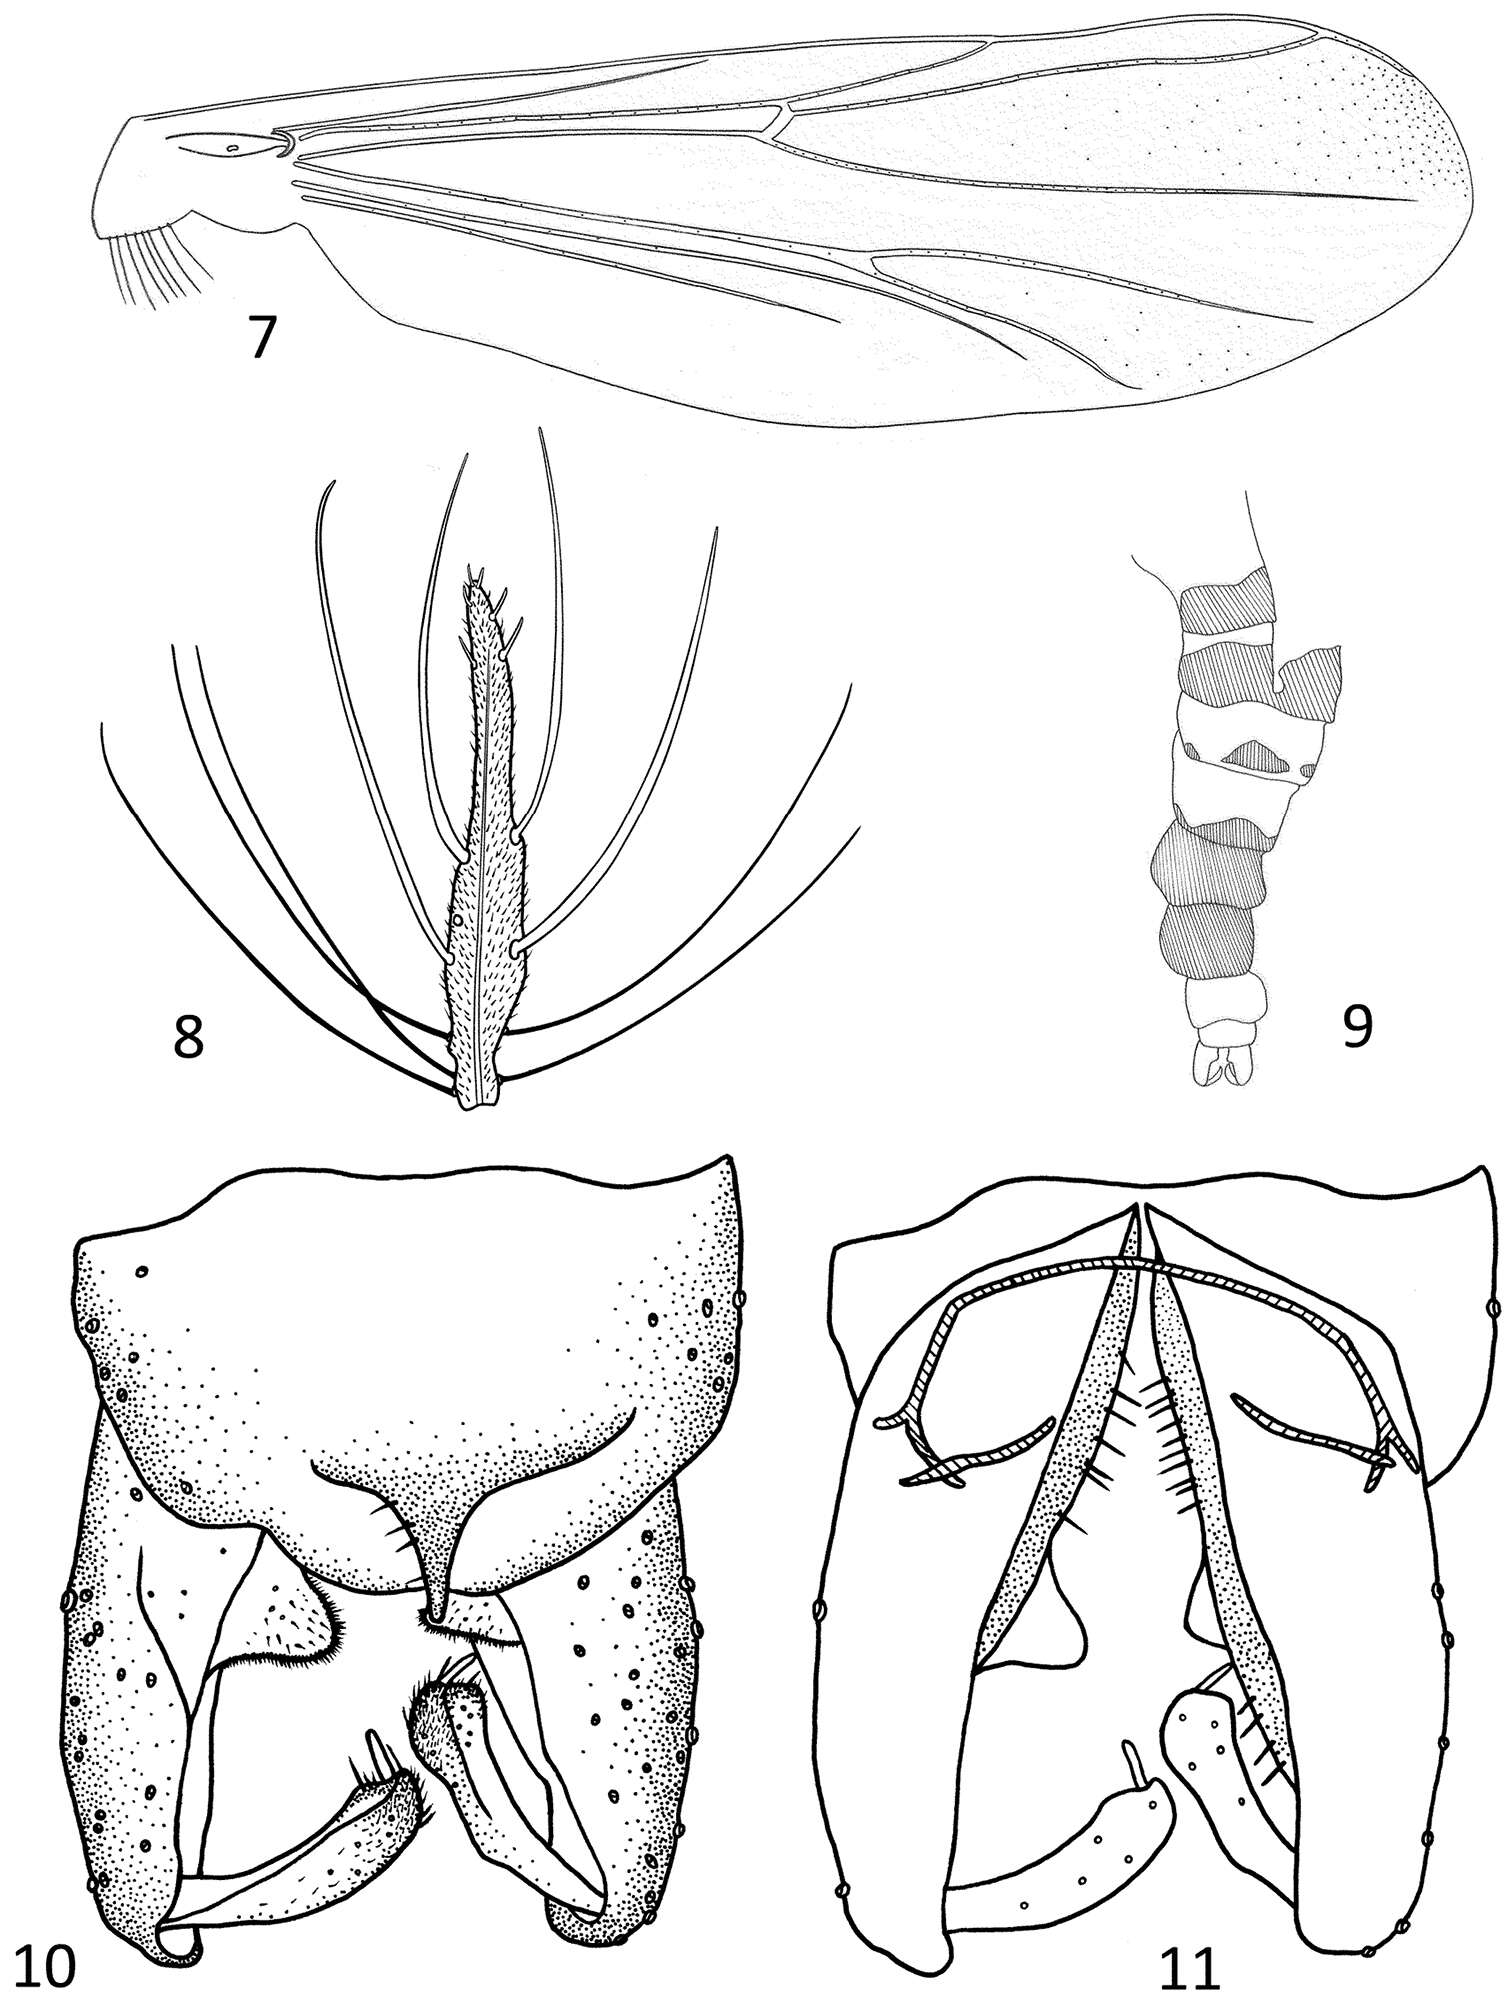 Sivun Parametriocnemus vittatus Li, Lin & Wang 2013 kuva